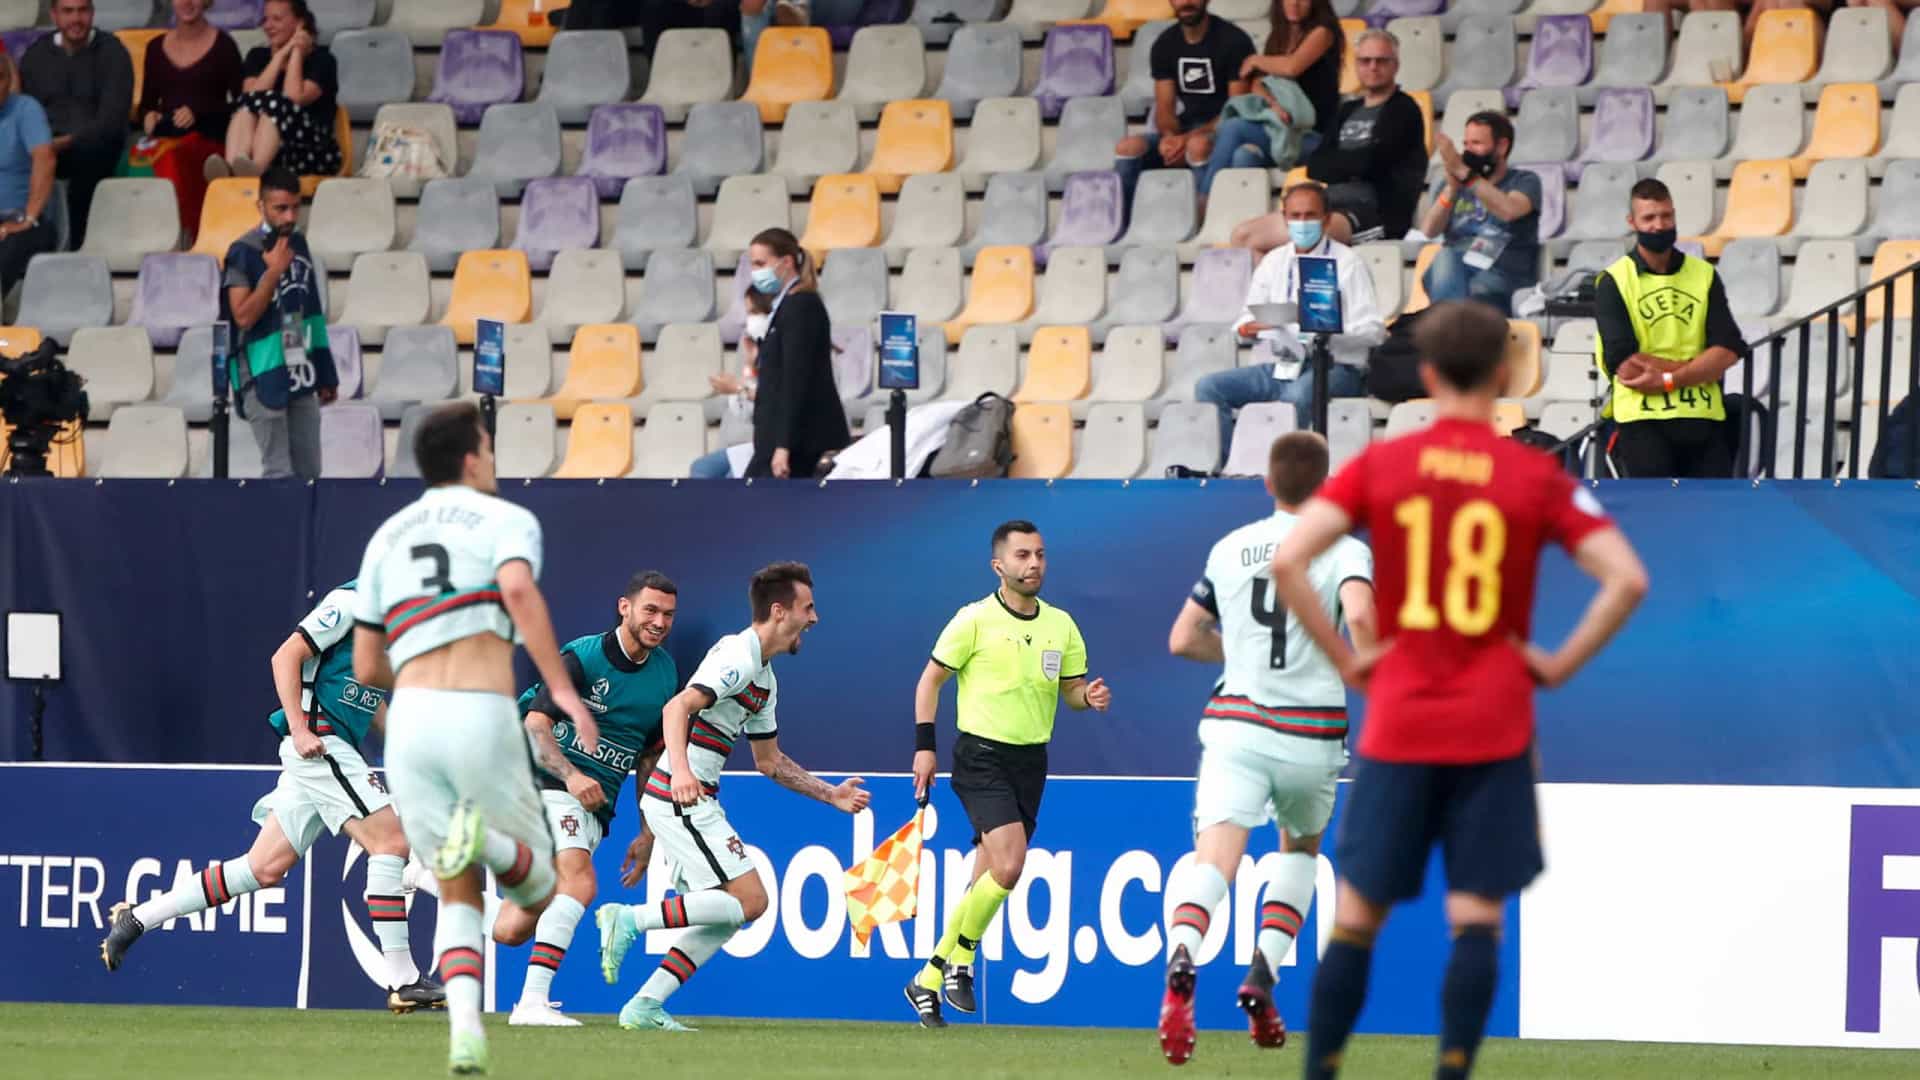 Gol contra põe Portugal na final do Europeu Sub-21